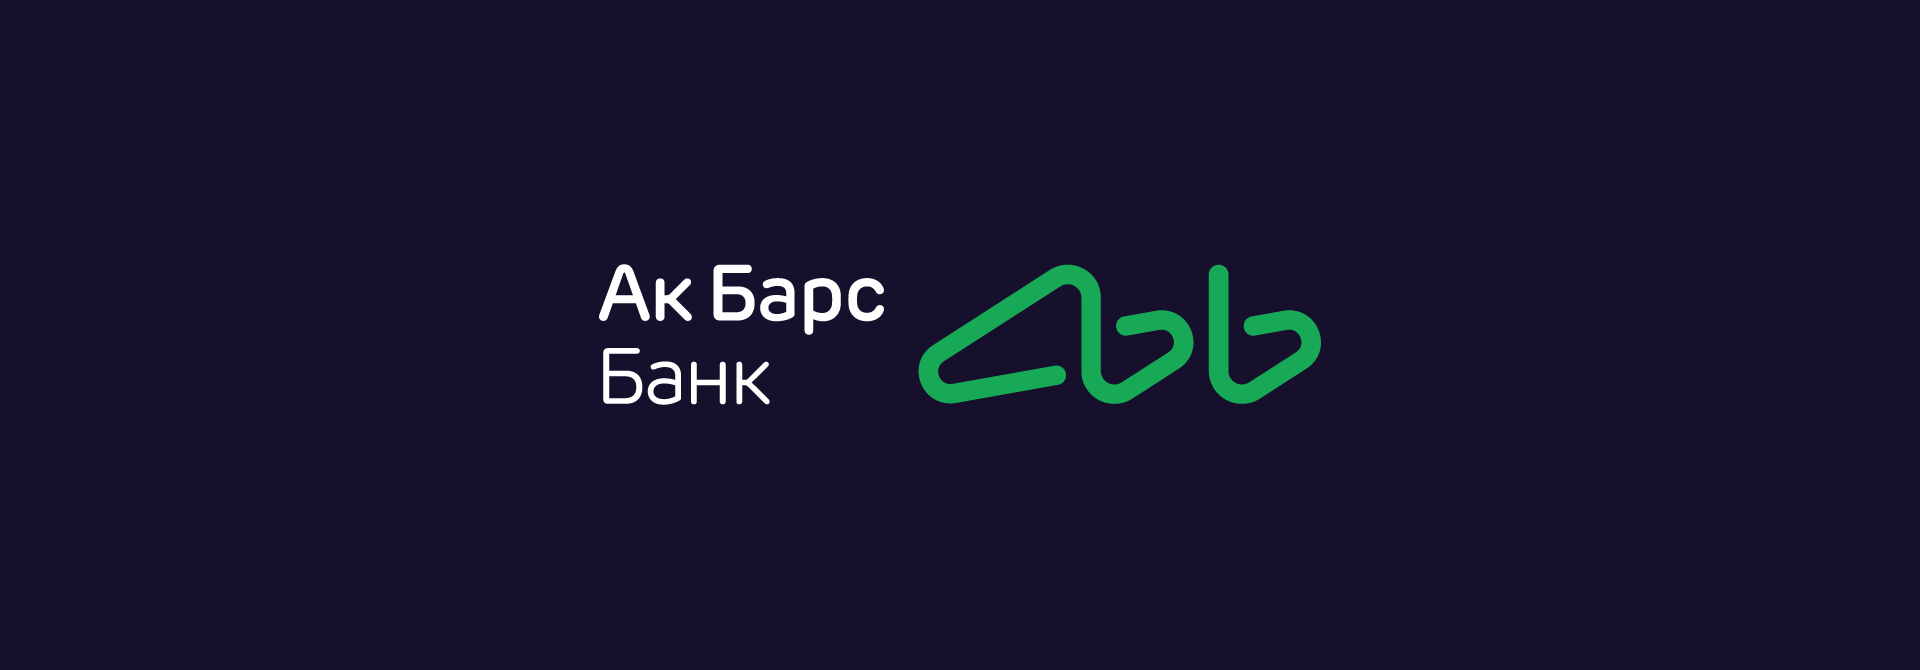 Ак барс банк дирхамы. АК Барс банк реклама. АК Барс банк логотип 2023. АК Барс банк картинки. Барс банк логотип.